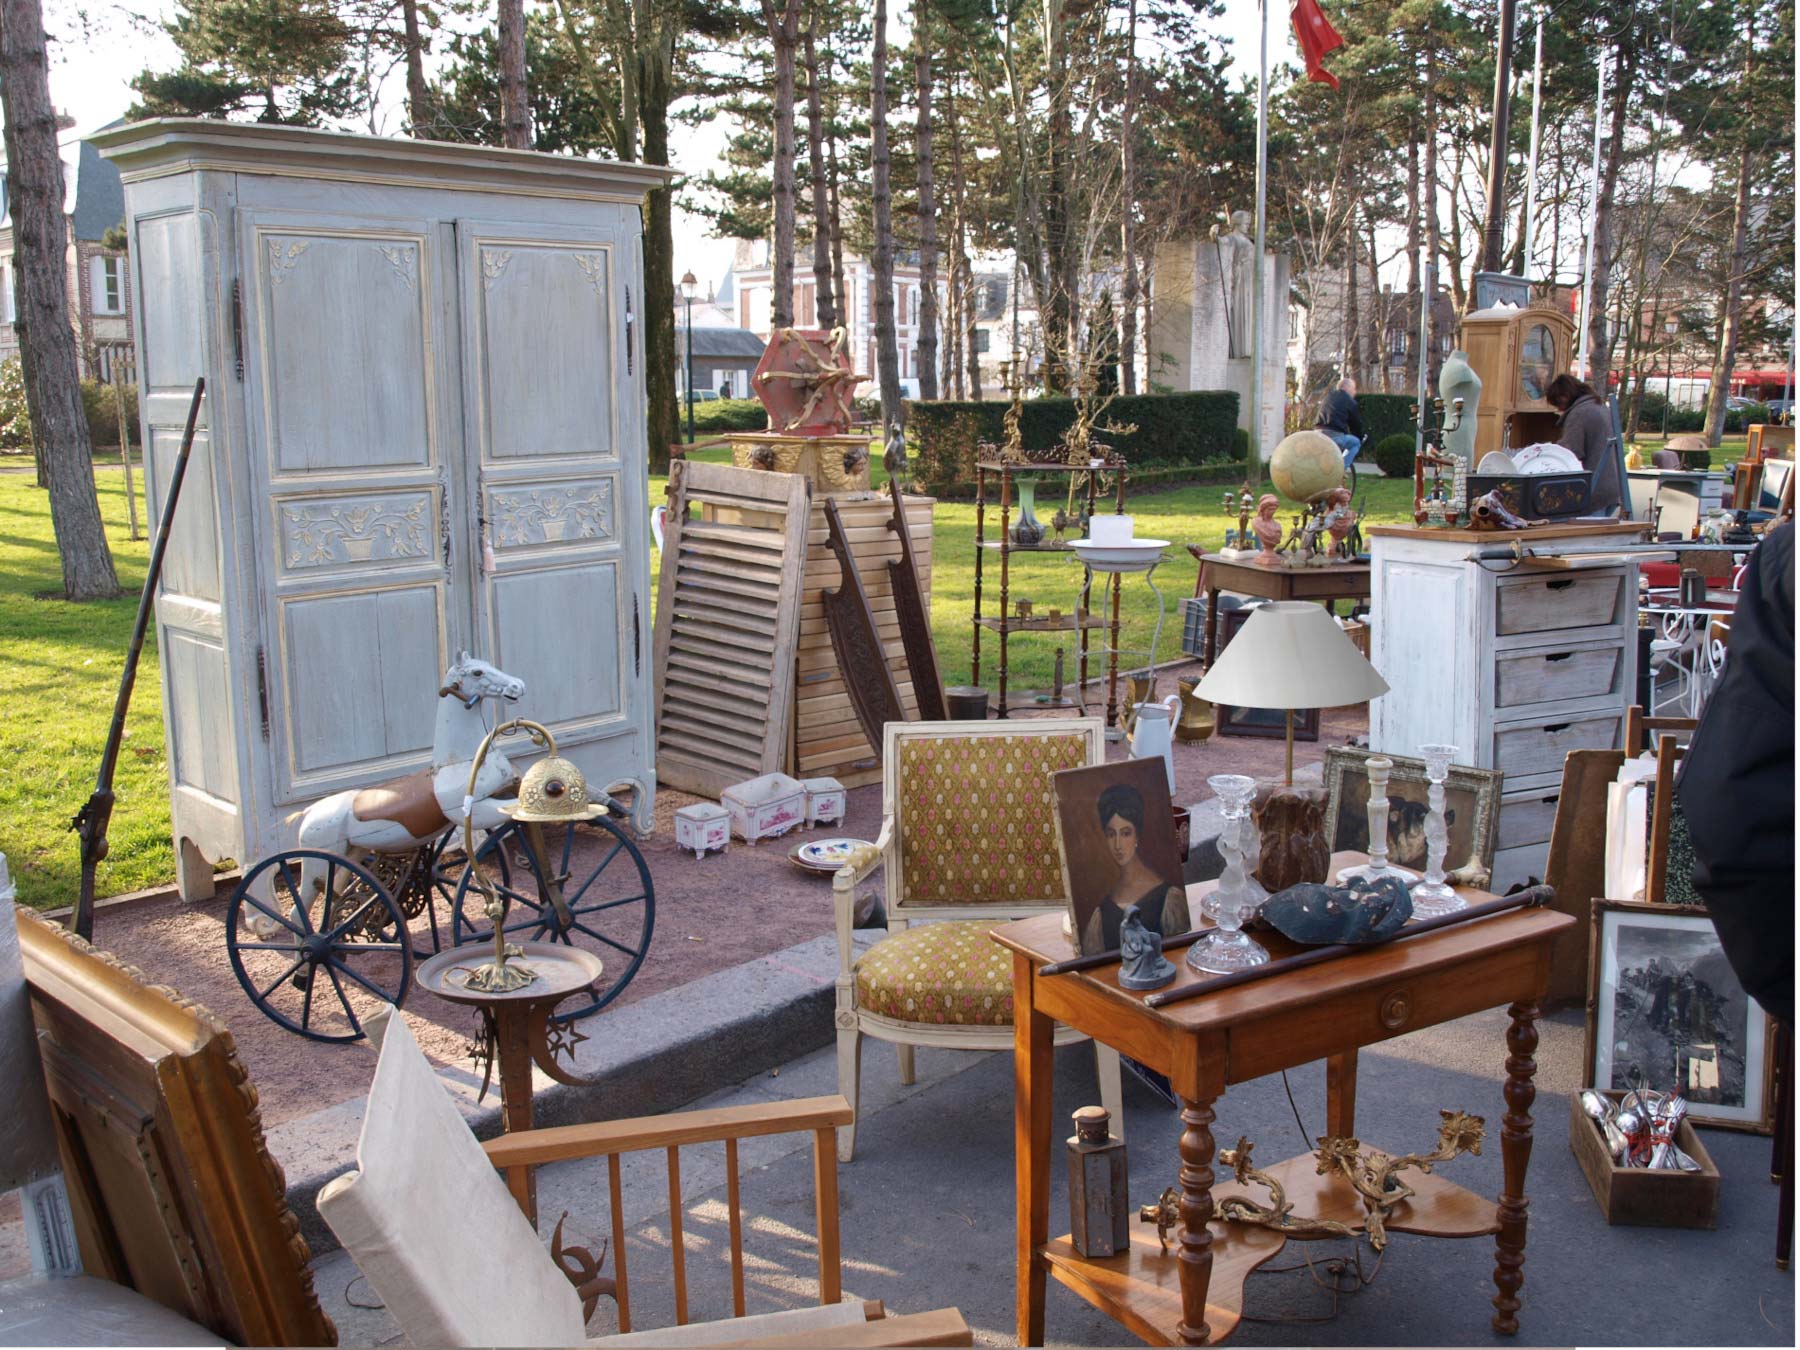 Photographie d'un vide grenier en extérieur et de divers objets de mobiliers, lampes, jouets
             anciens, vaisselles....